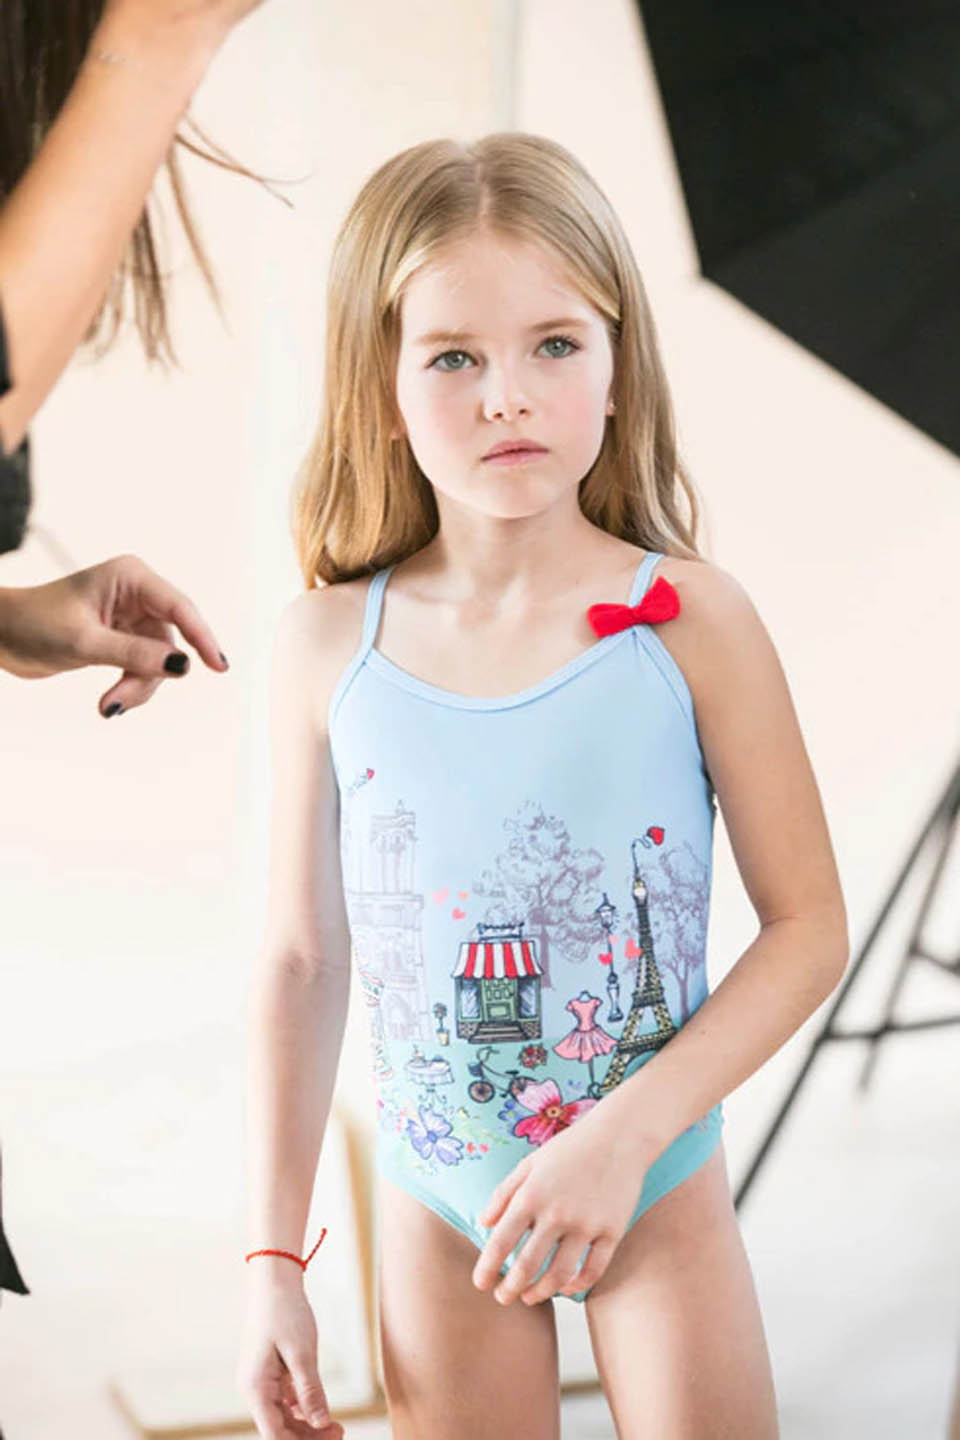 Анастасия Авербух в рекламной съемке для Pilpel Kids. Фото: "Ленс афакот"